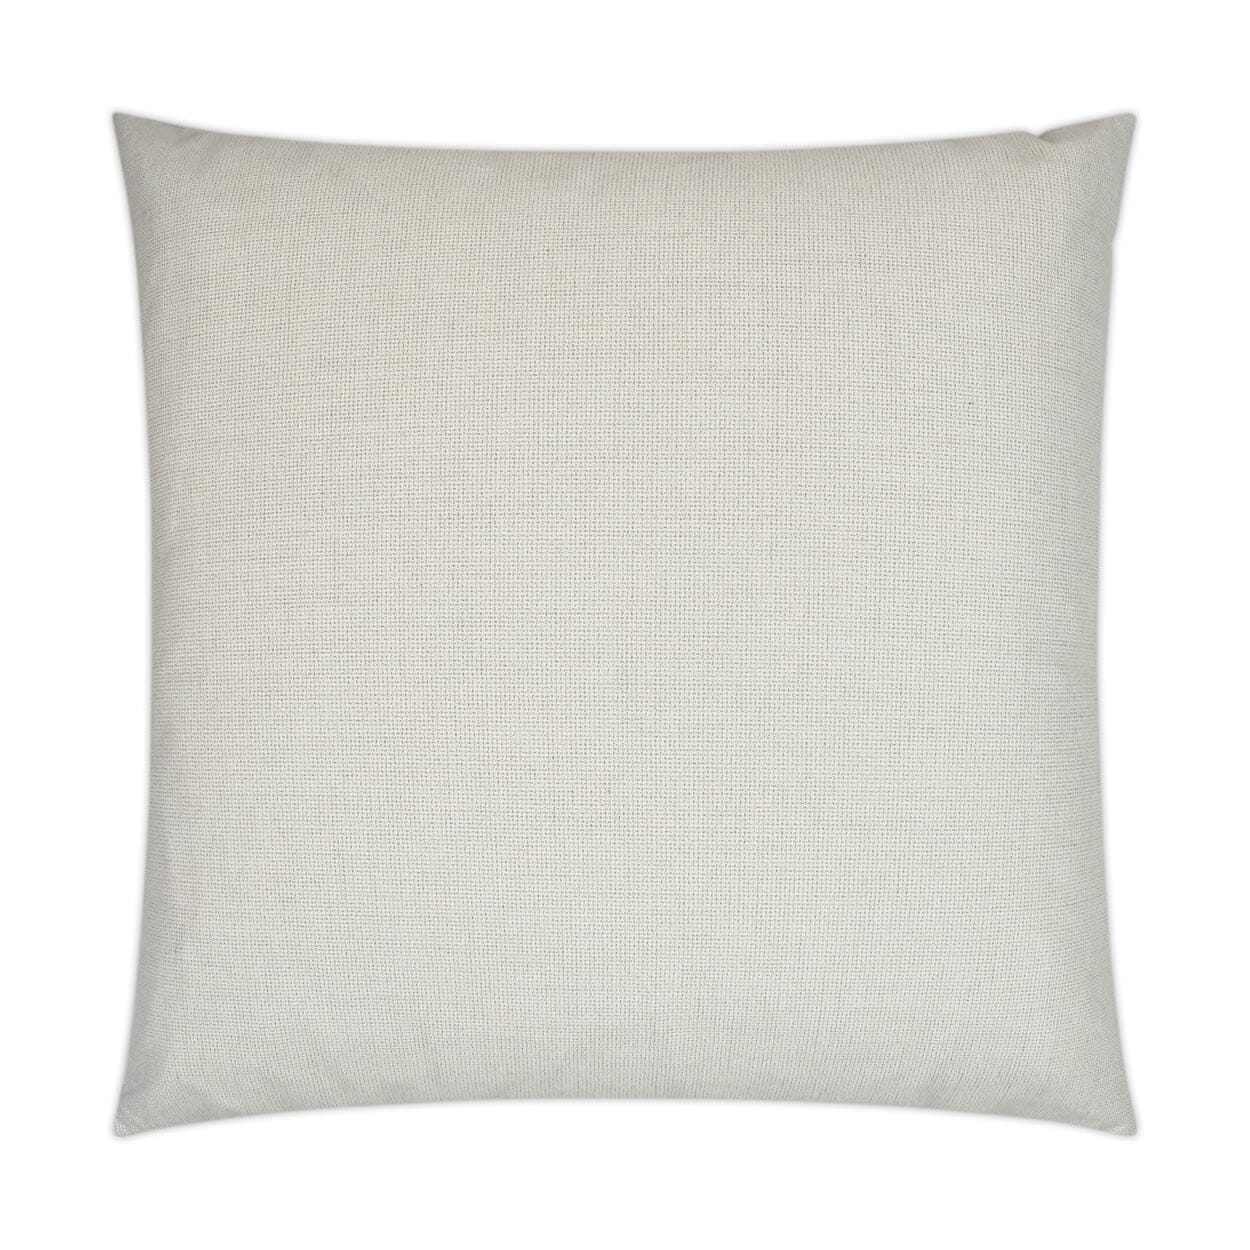 D.V. Kap 22" x 22" Outdoor Throw Pillow | Bliss Linen Pillows D.V Kap Outdoor